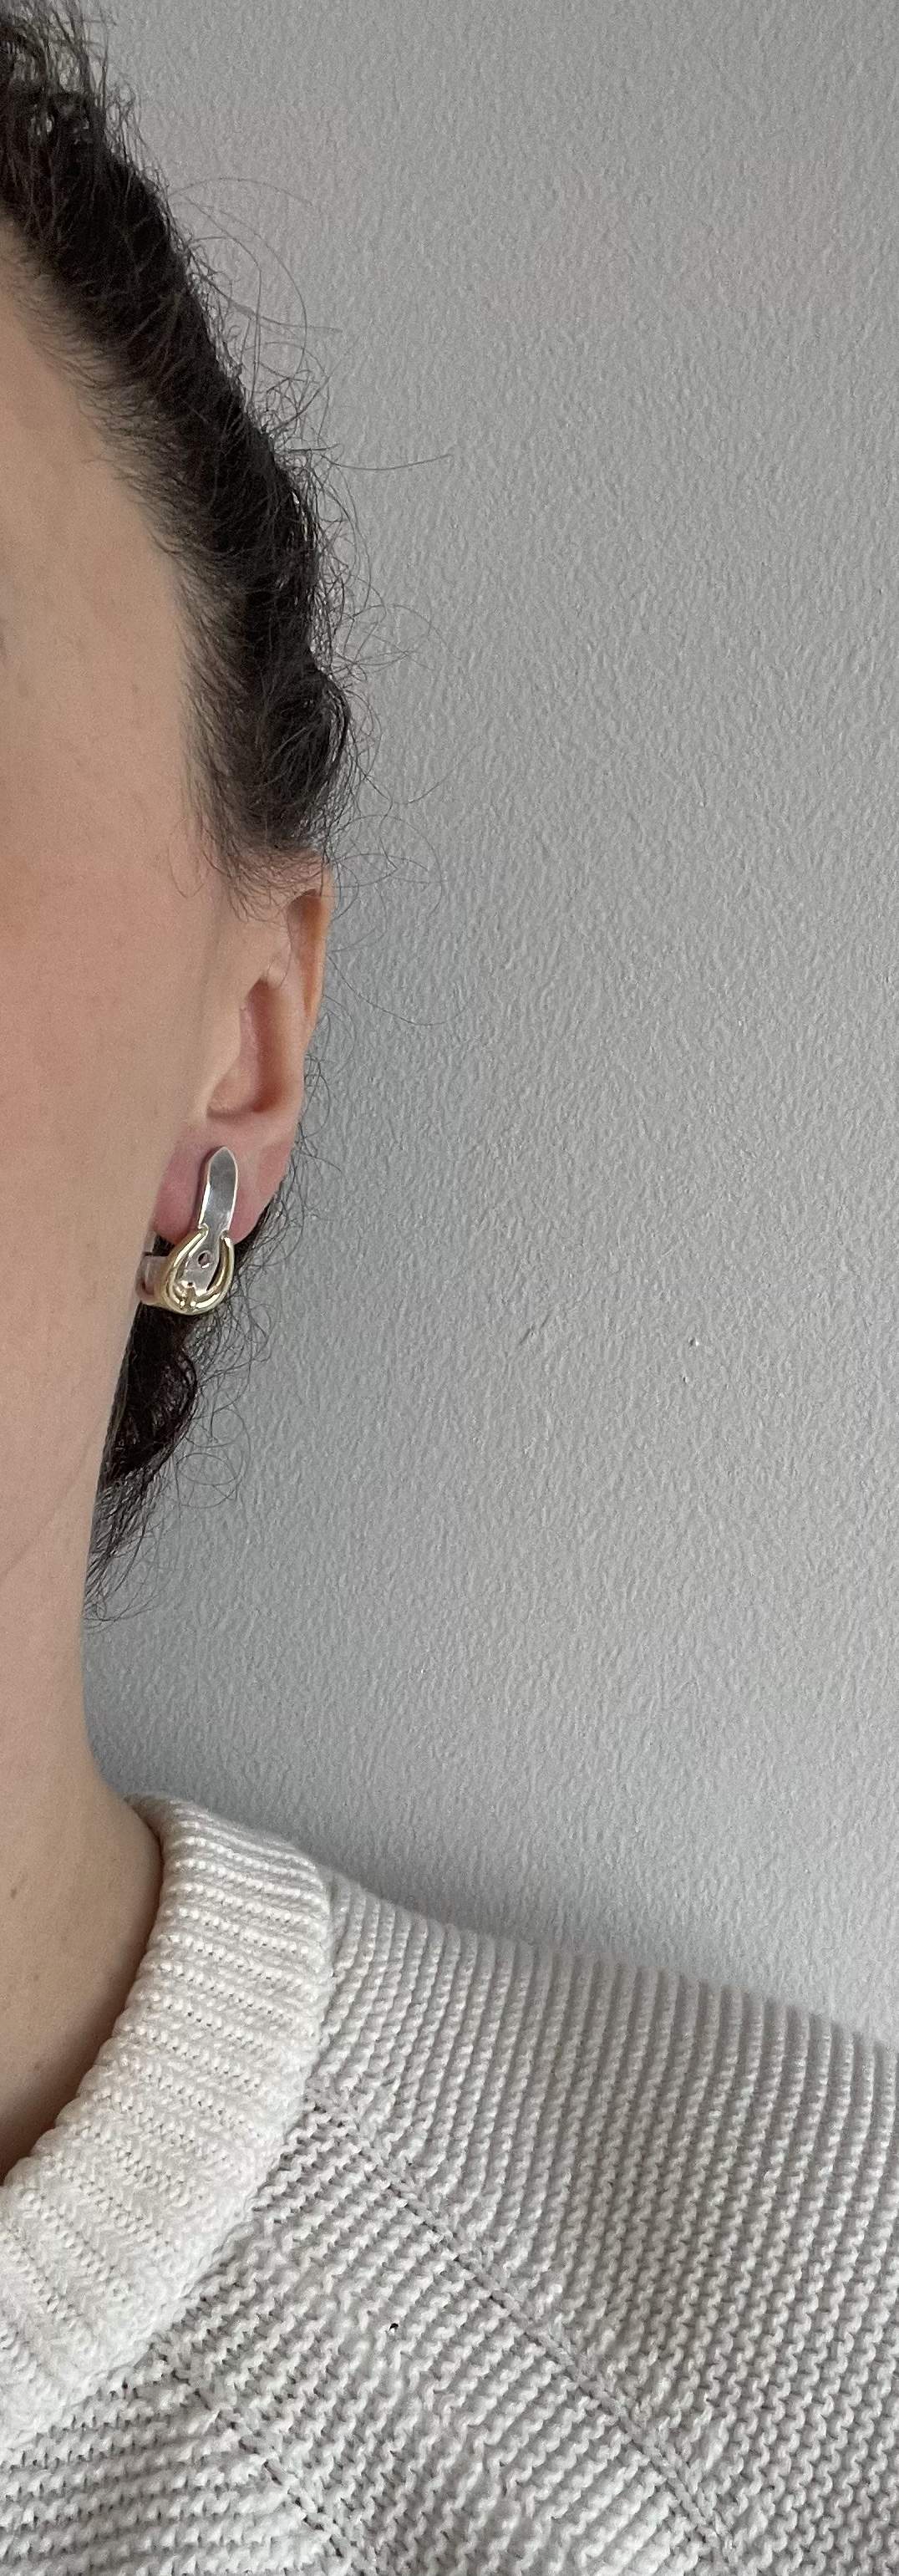 Buckle strap earrings